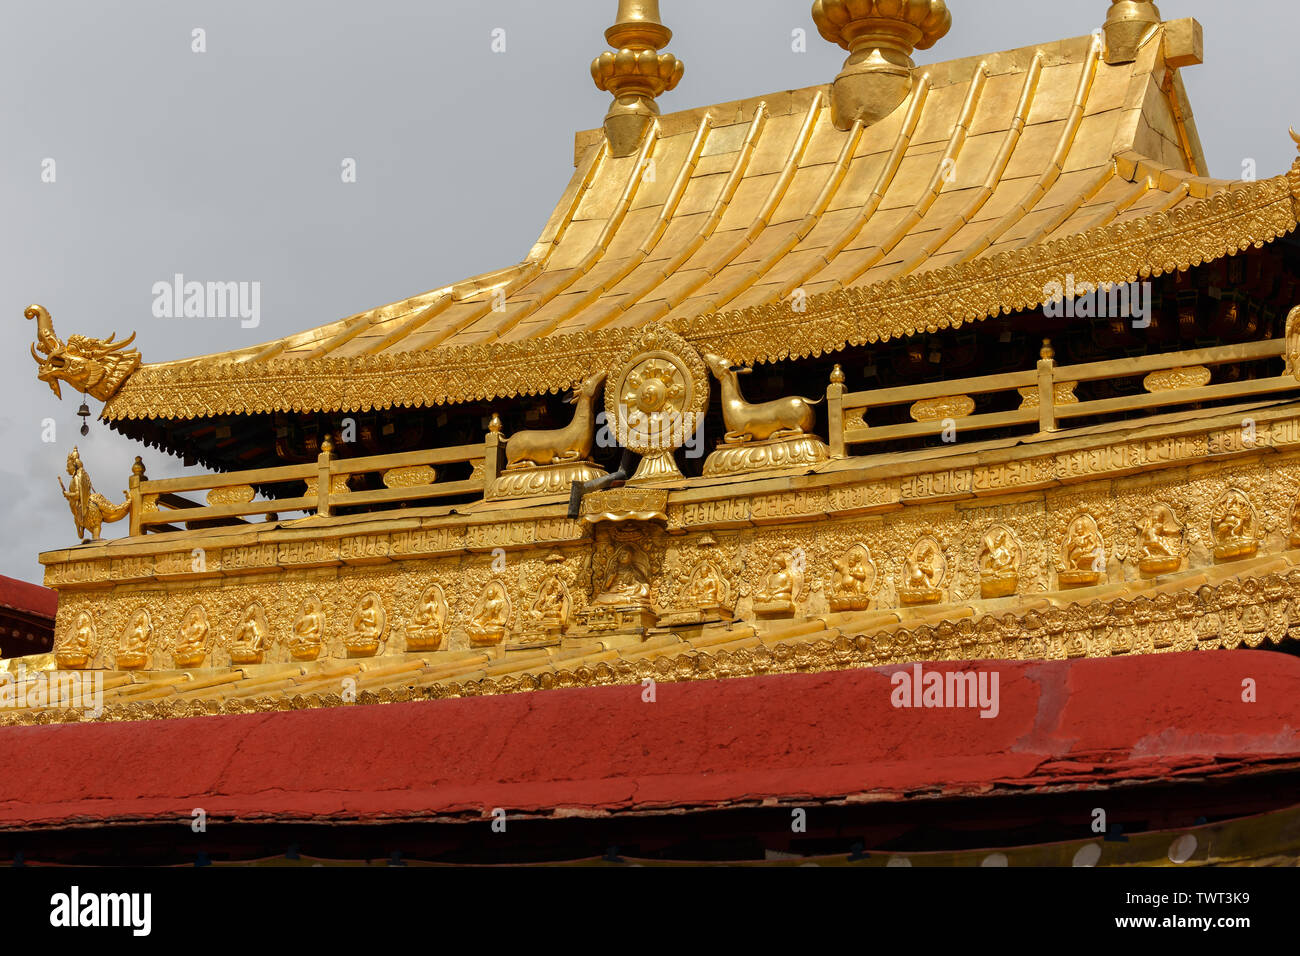 Chiusura del tetto del Jokhang Tempio. Nel mezzo della famosa ruota di dharma e caprioli. In corrispondenza della parte di fondo di piccole statue di Buddha. Arte Buddista. Foto Stock